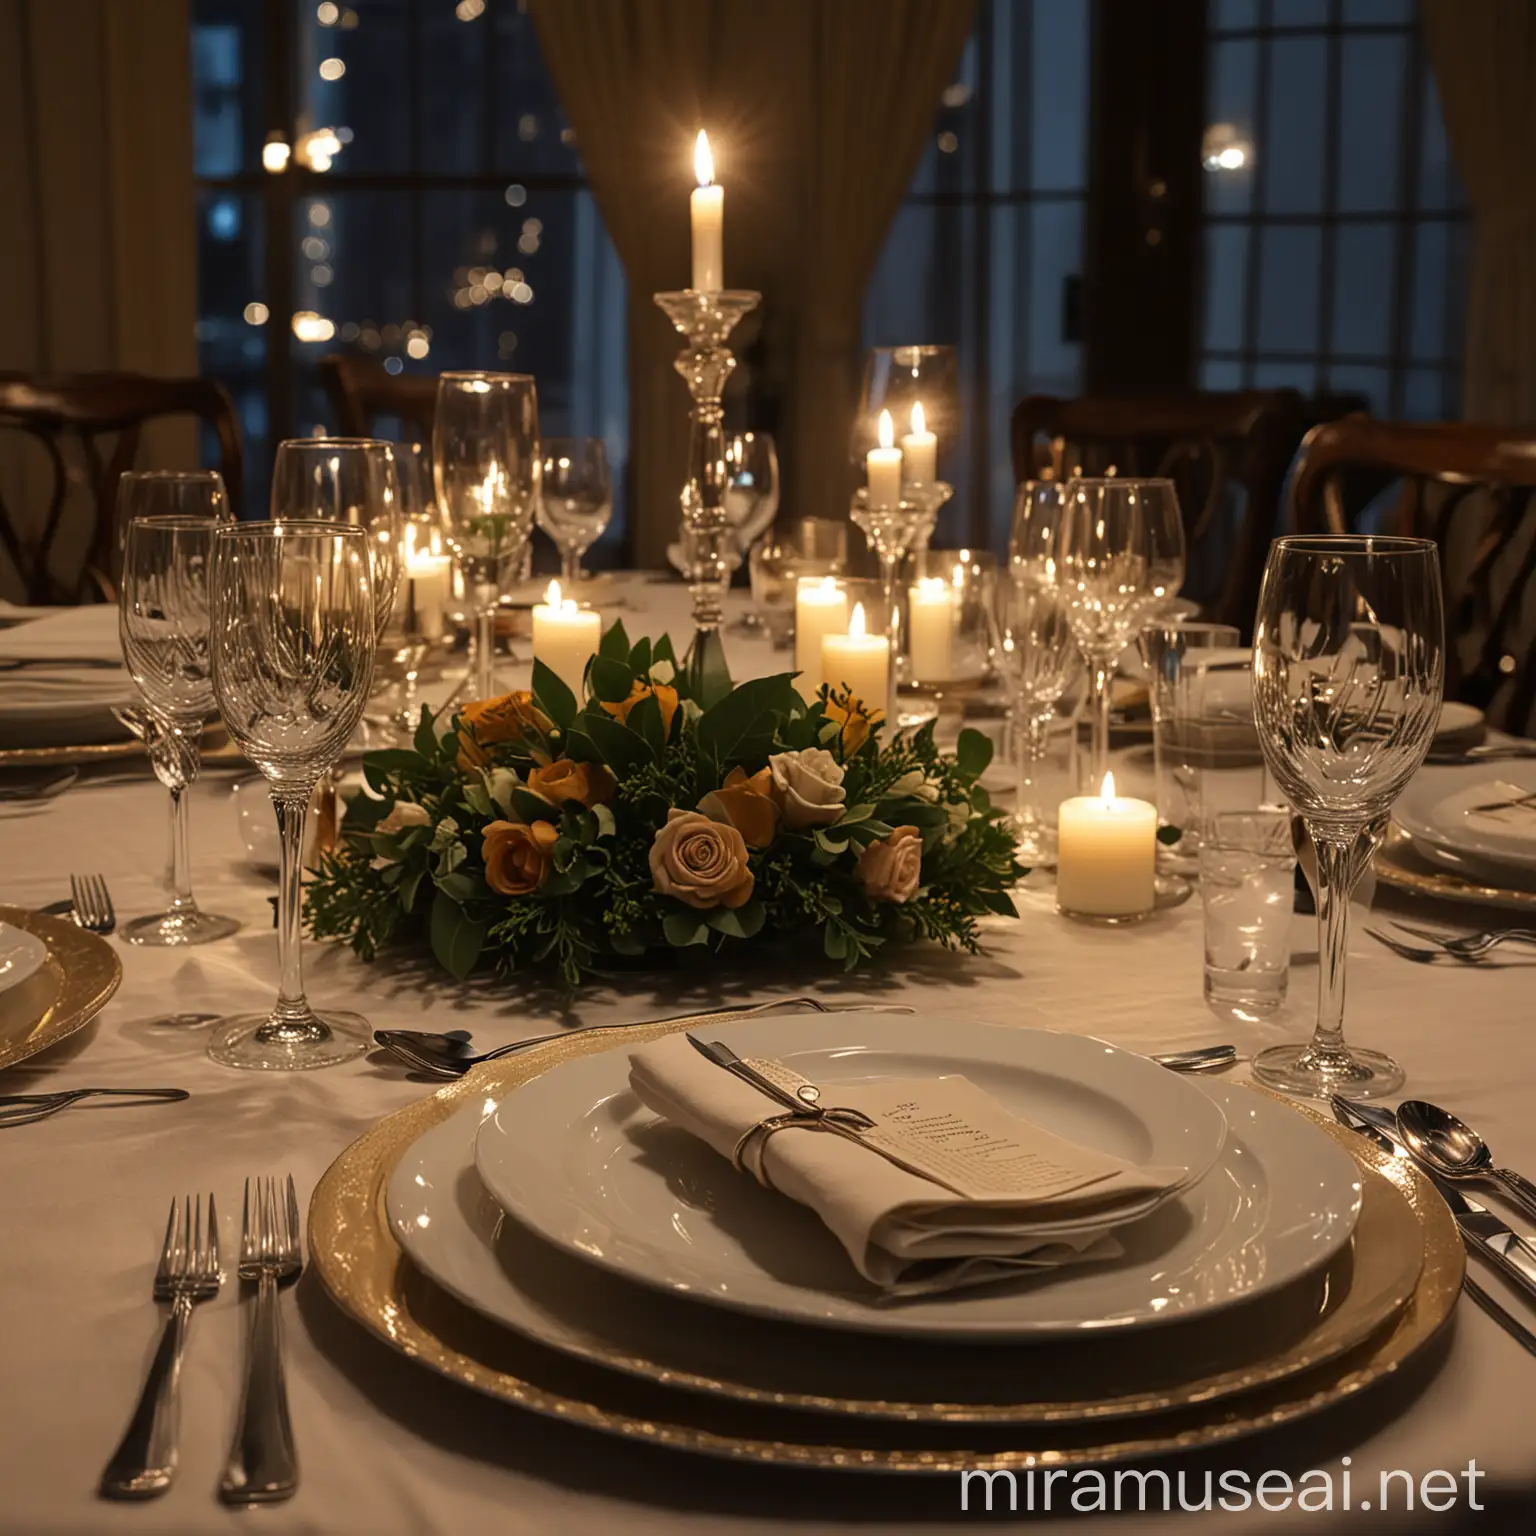 Elegant Dinner Table Setting in Dim Night Light